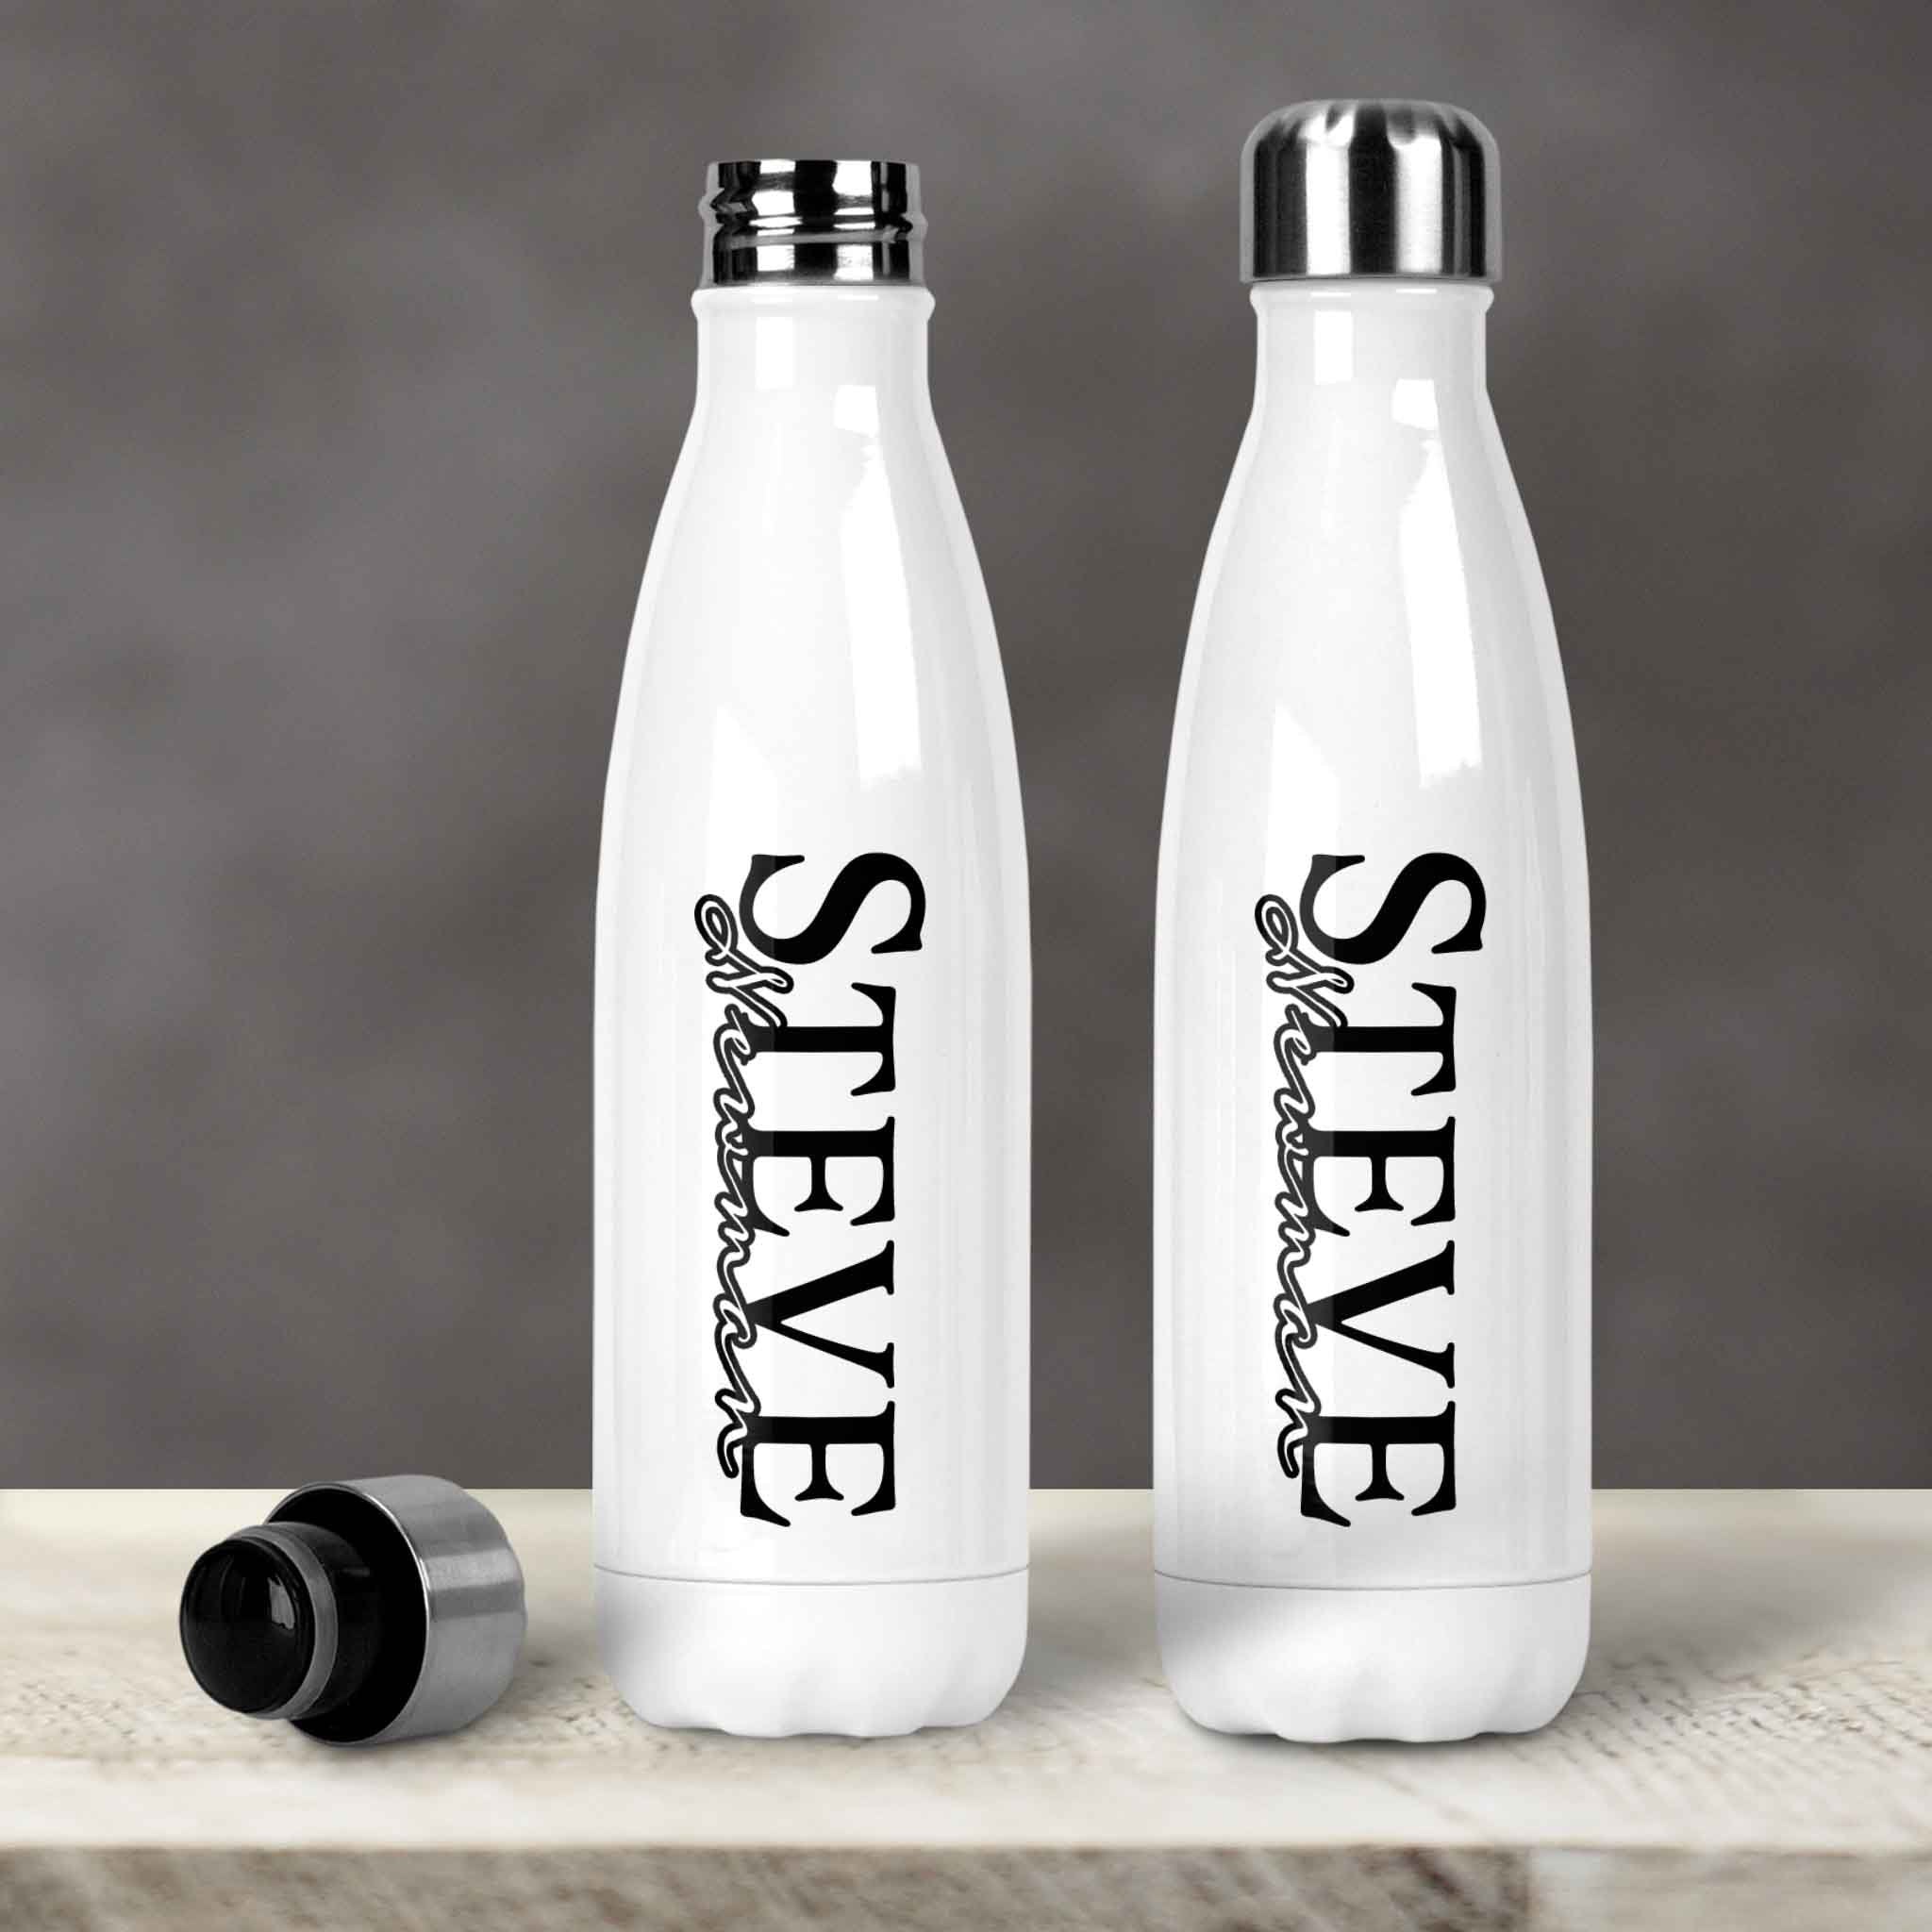 Custom 20 oz Stainless Steel Water Bottle, Personalized Water Bottle